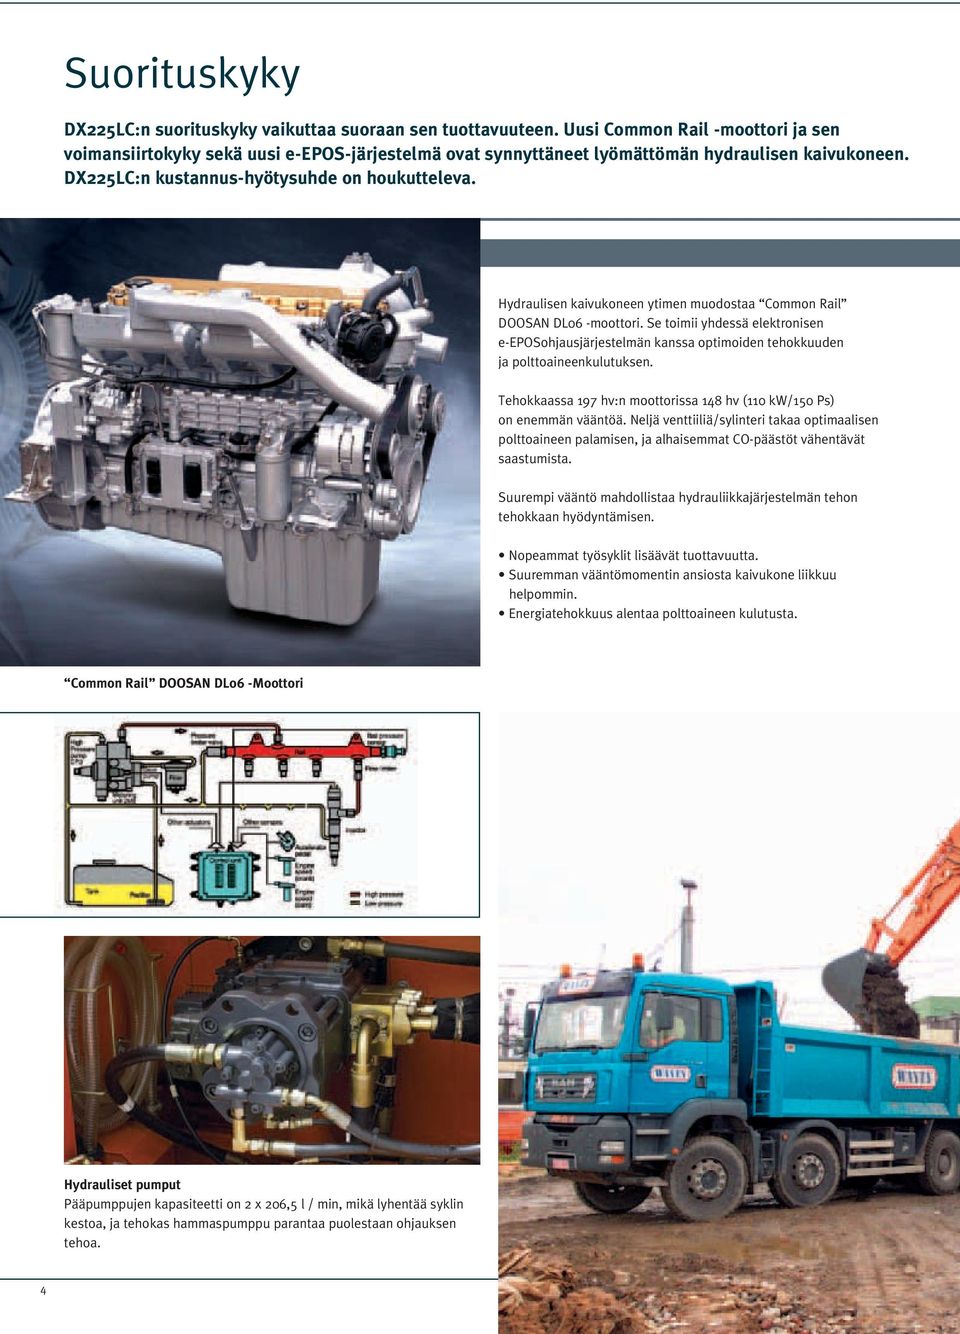 Hydraulisen kaivukoneen ytimen muodostaa Coon Rail DOOSAN DL06 -moottori. Se toimii yhdessä elektronisen e-eposohjausjärjestelmän kanssa optimoiden tehokkuuden ja polttoaineenkulutuksen.